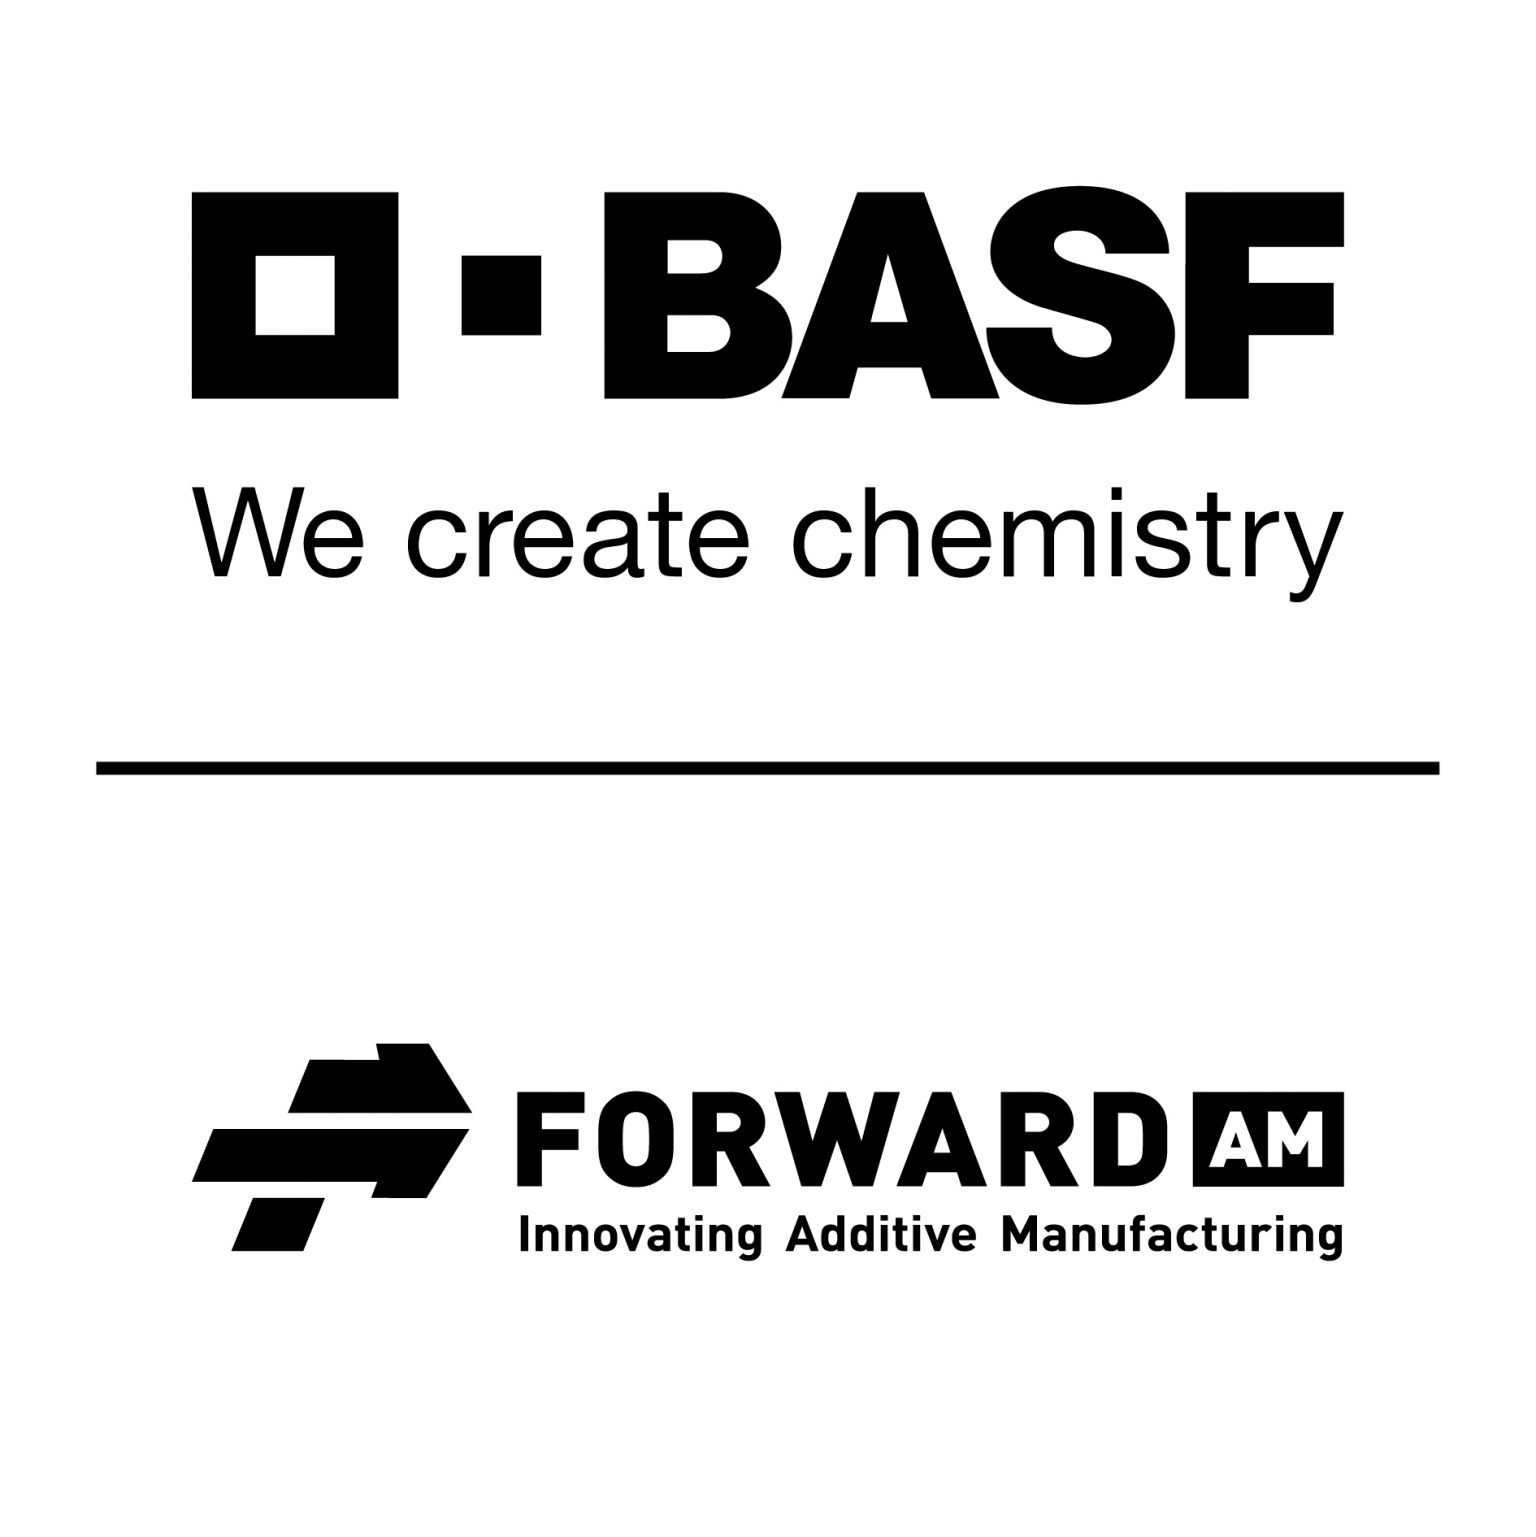 BASF Forward AM Logo